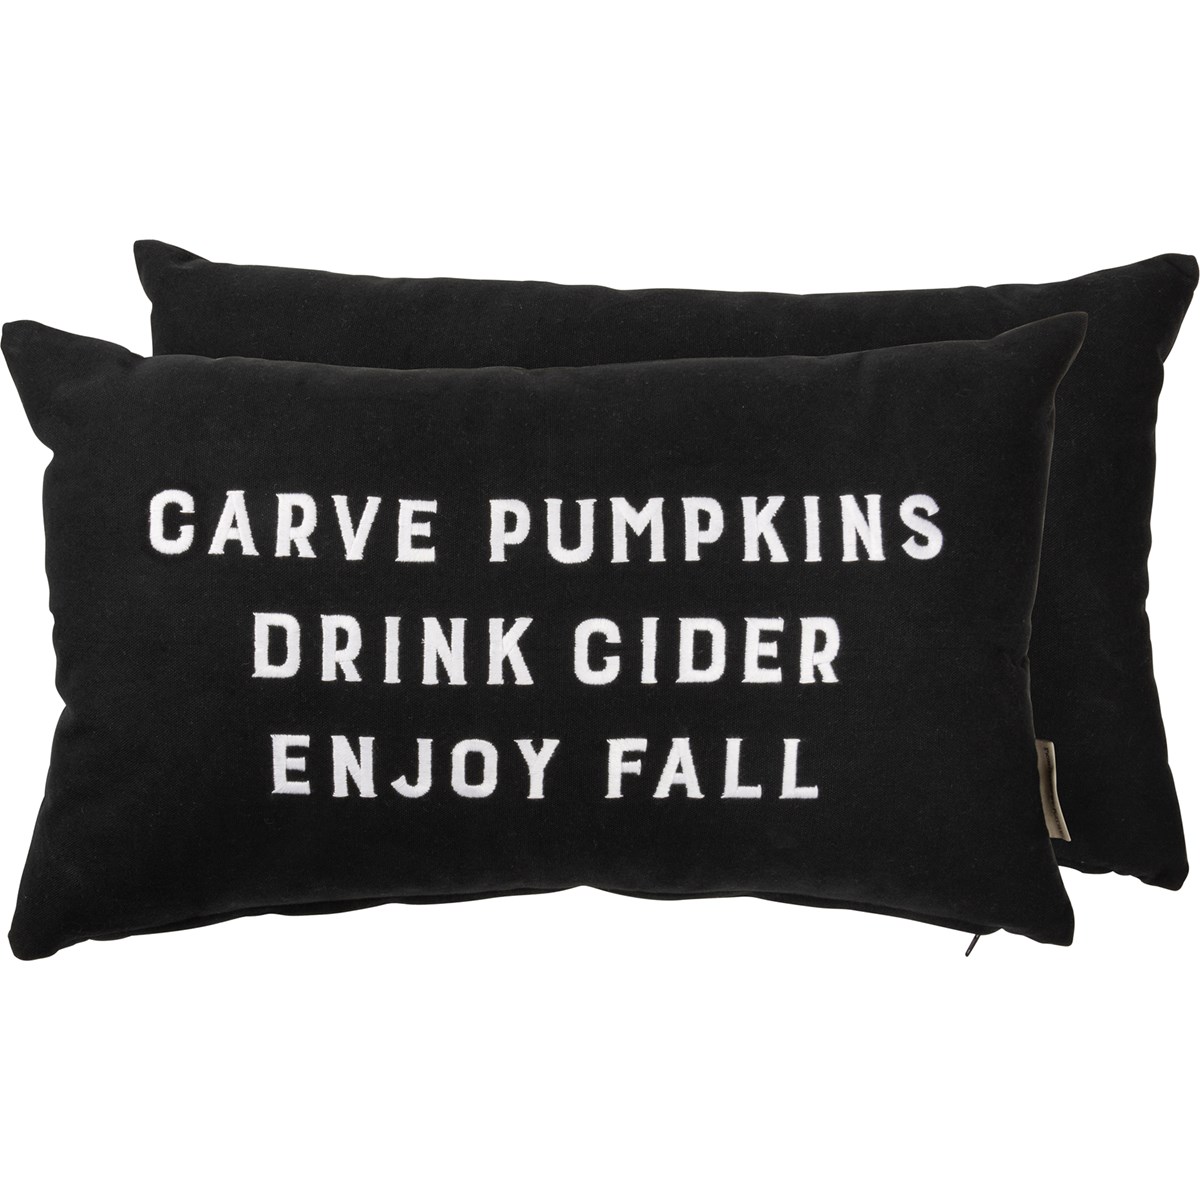 Carve Pumpkins Drink Cider Enjoy Fall Pillow - Cotton, Zipper